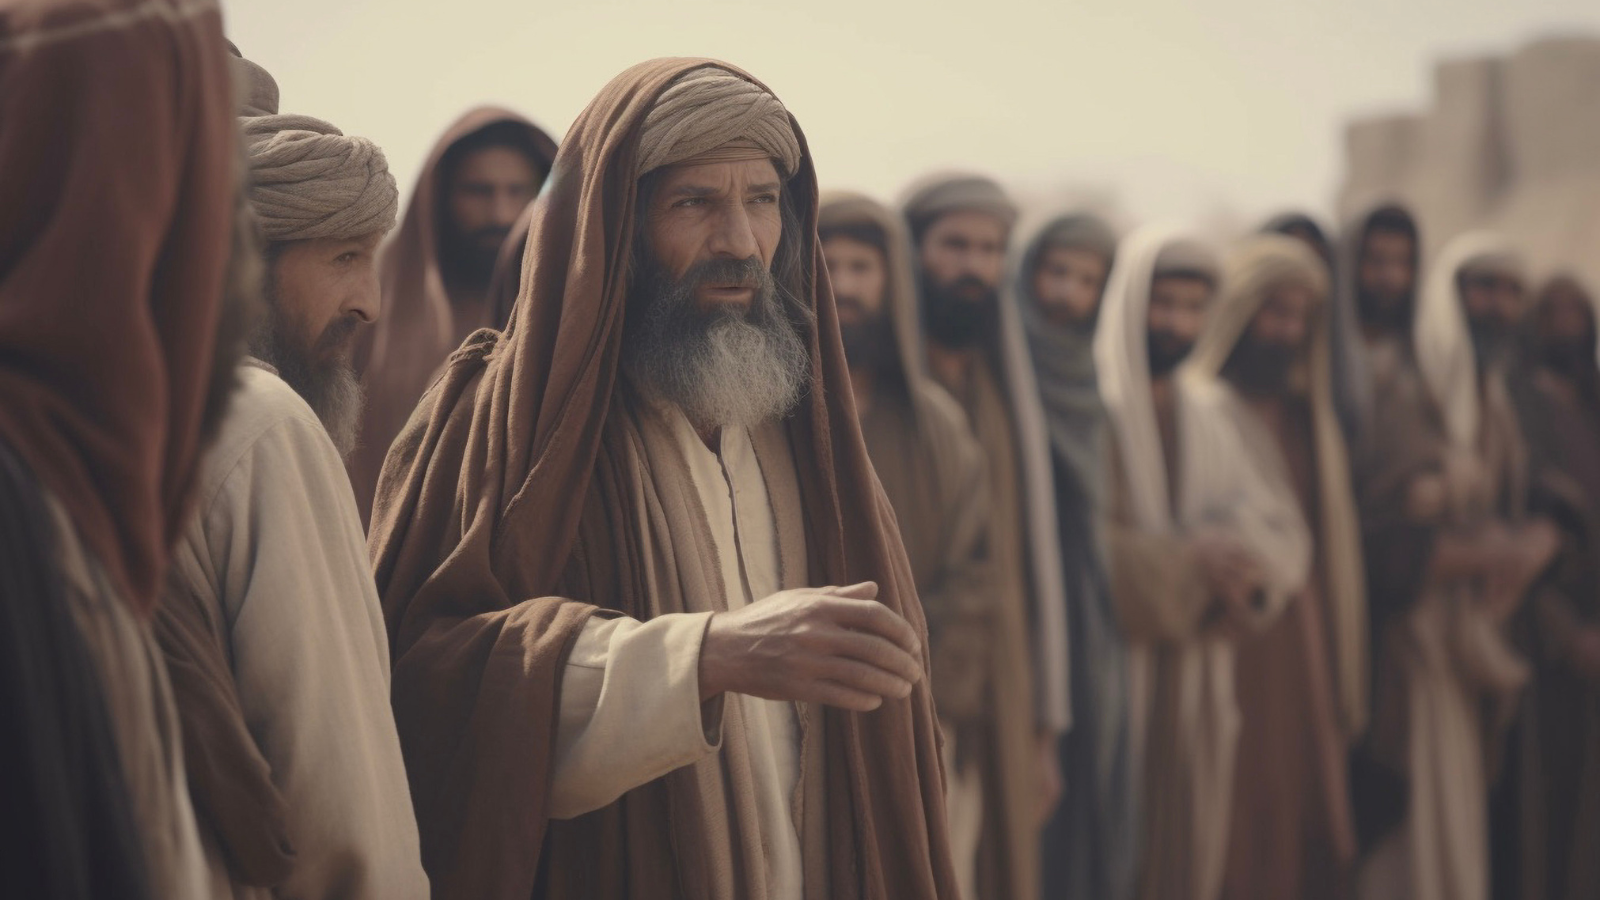 Group of men that look like Pharisees